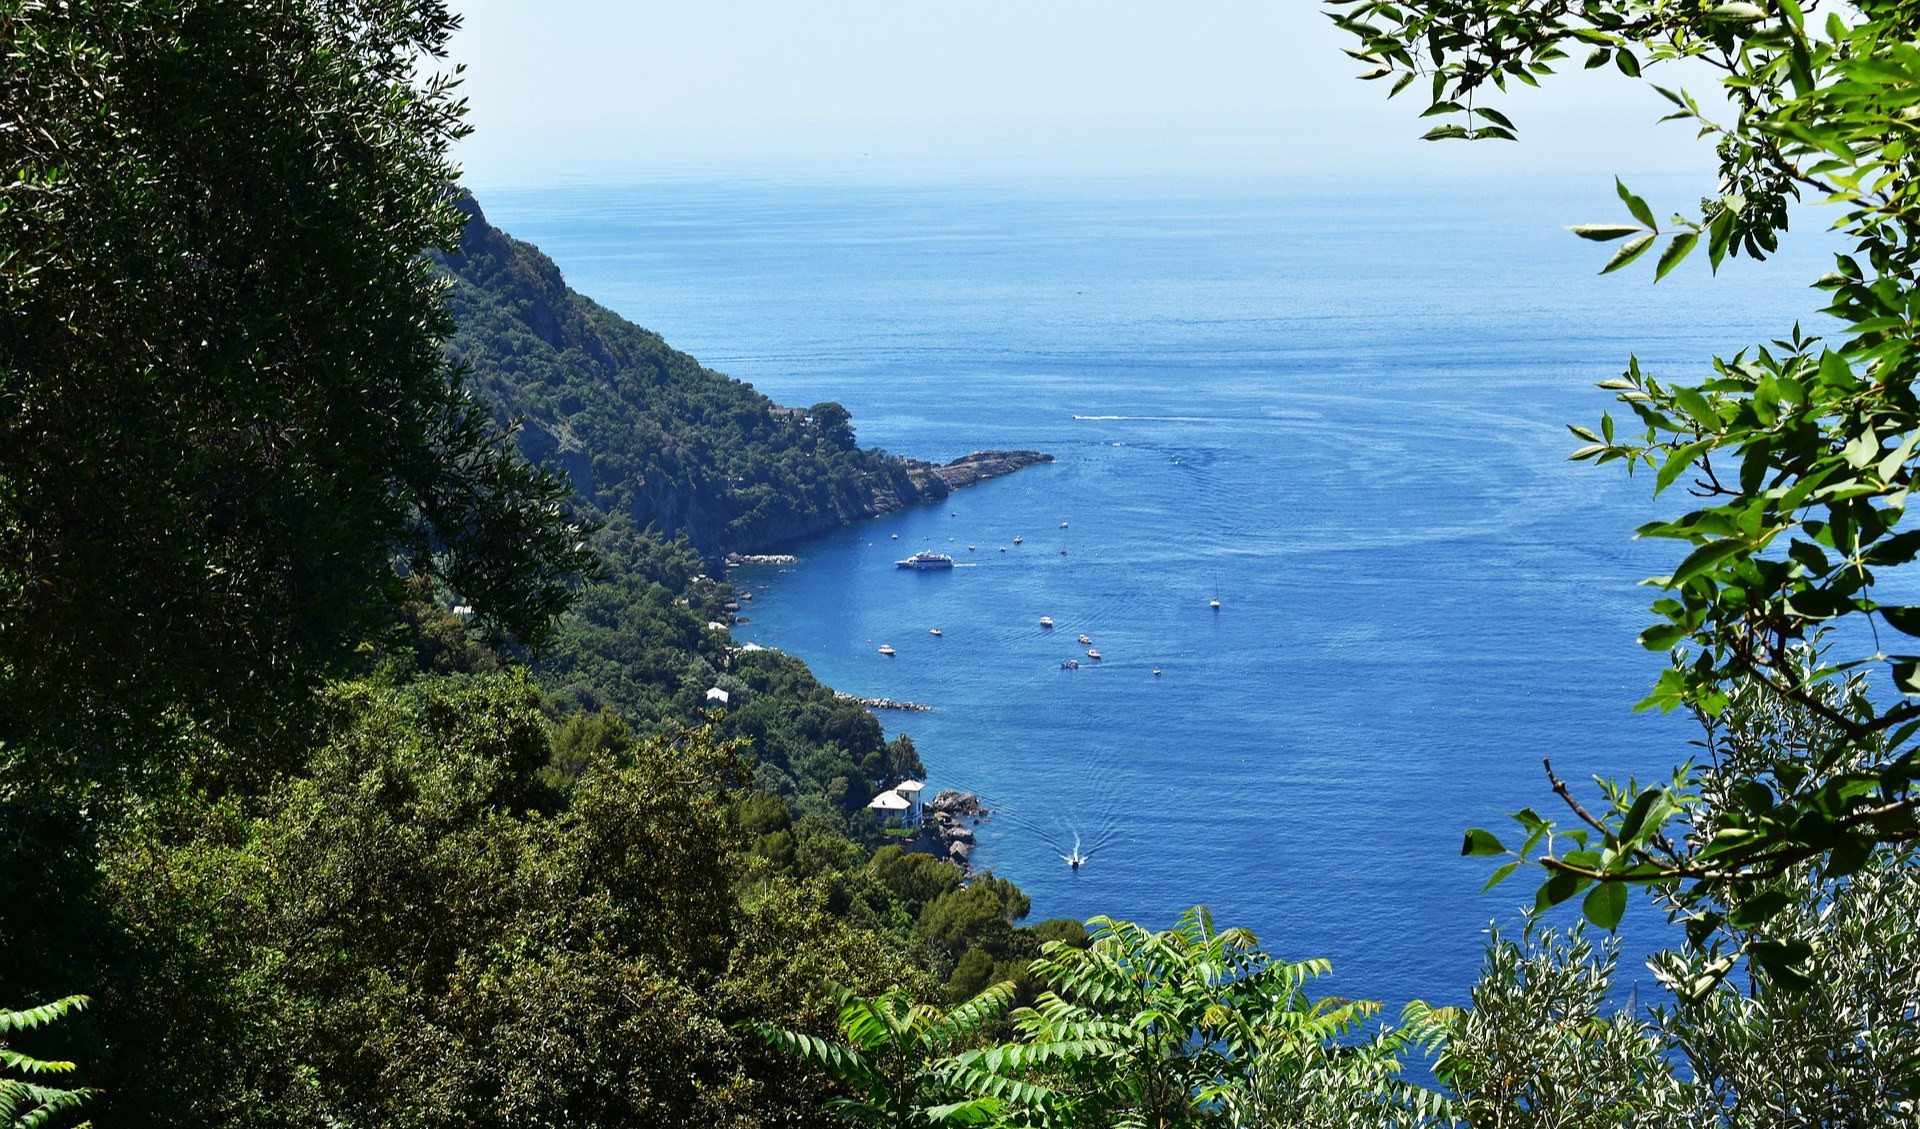 Meteo in Liguria, sole e temperature in aumento: le previsioni